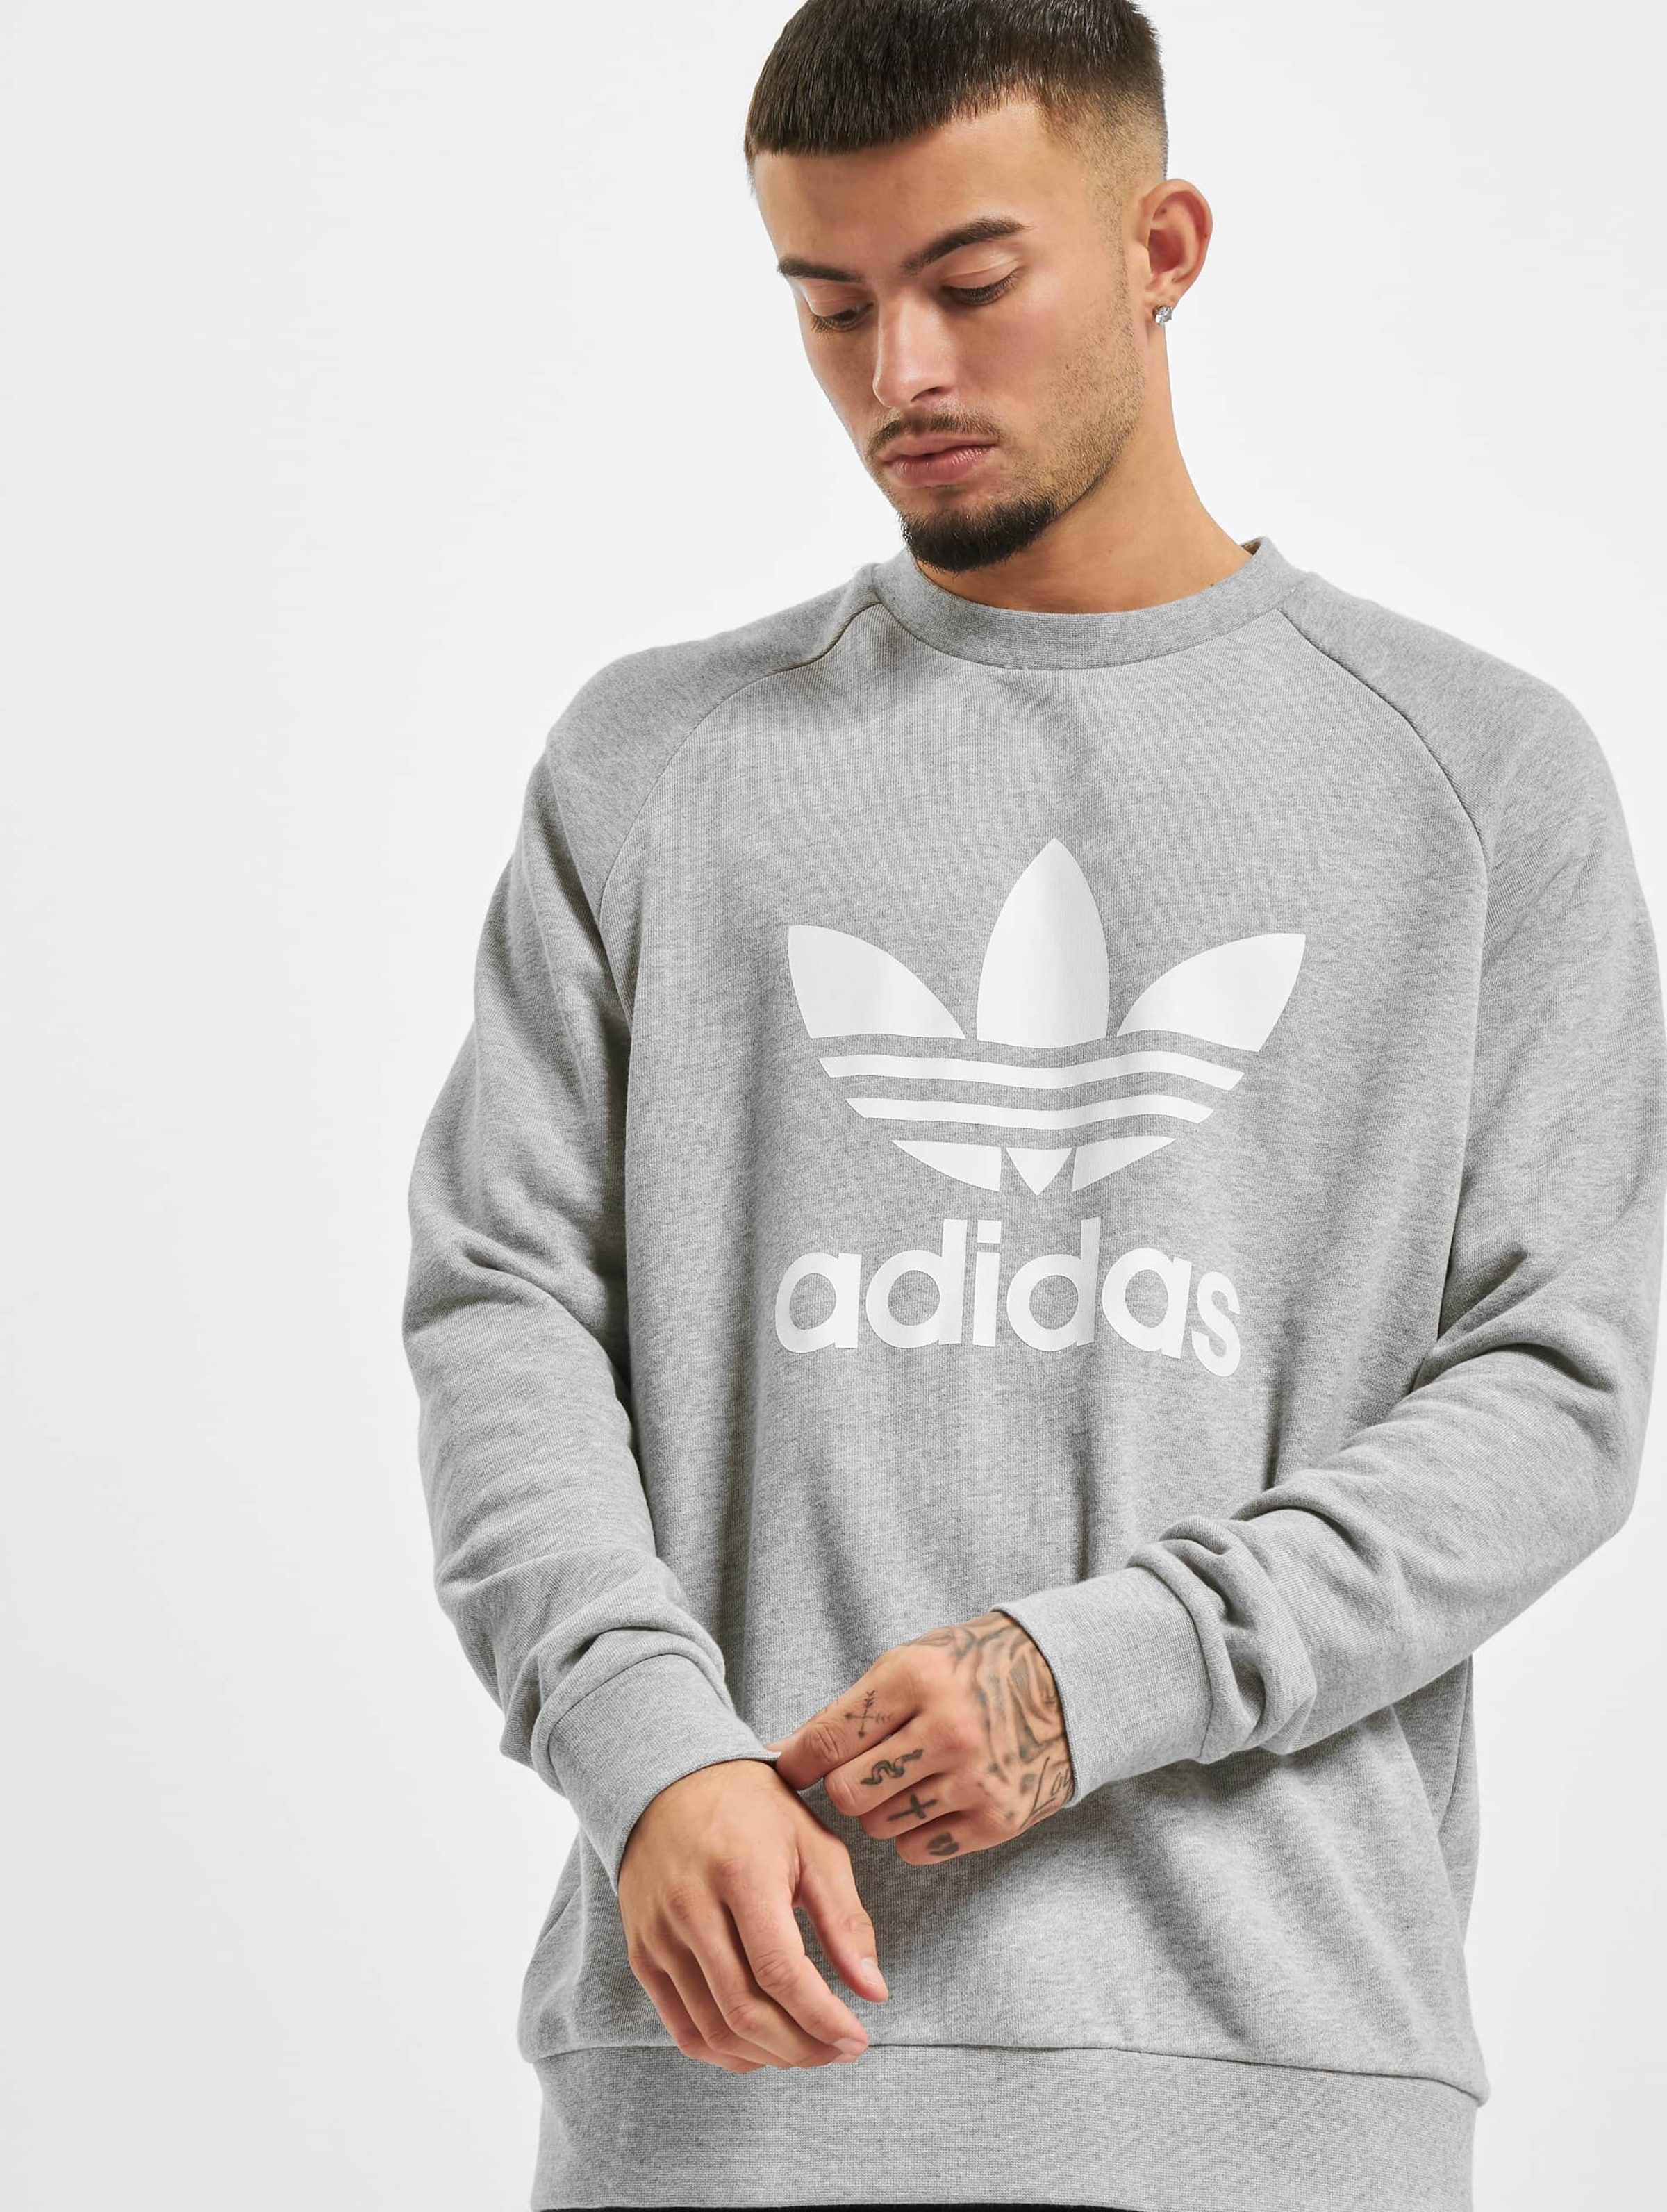 adidas Originals Adidas Trefoil Crew Sweatshirt Mannen op kleur grijs, Maat S